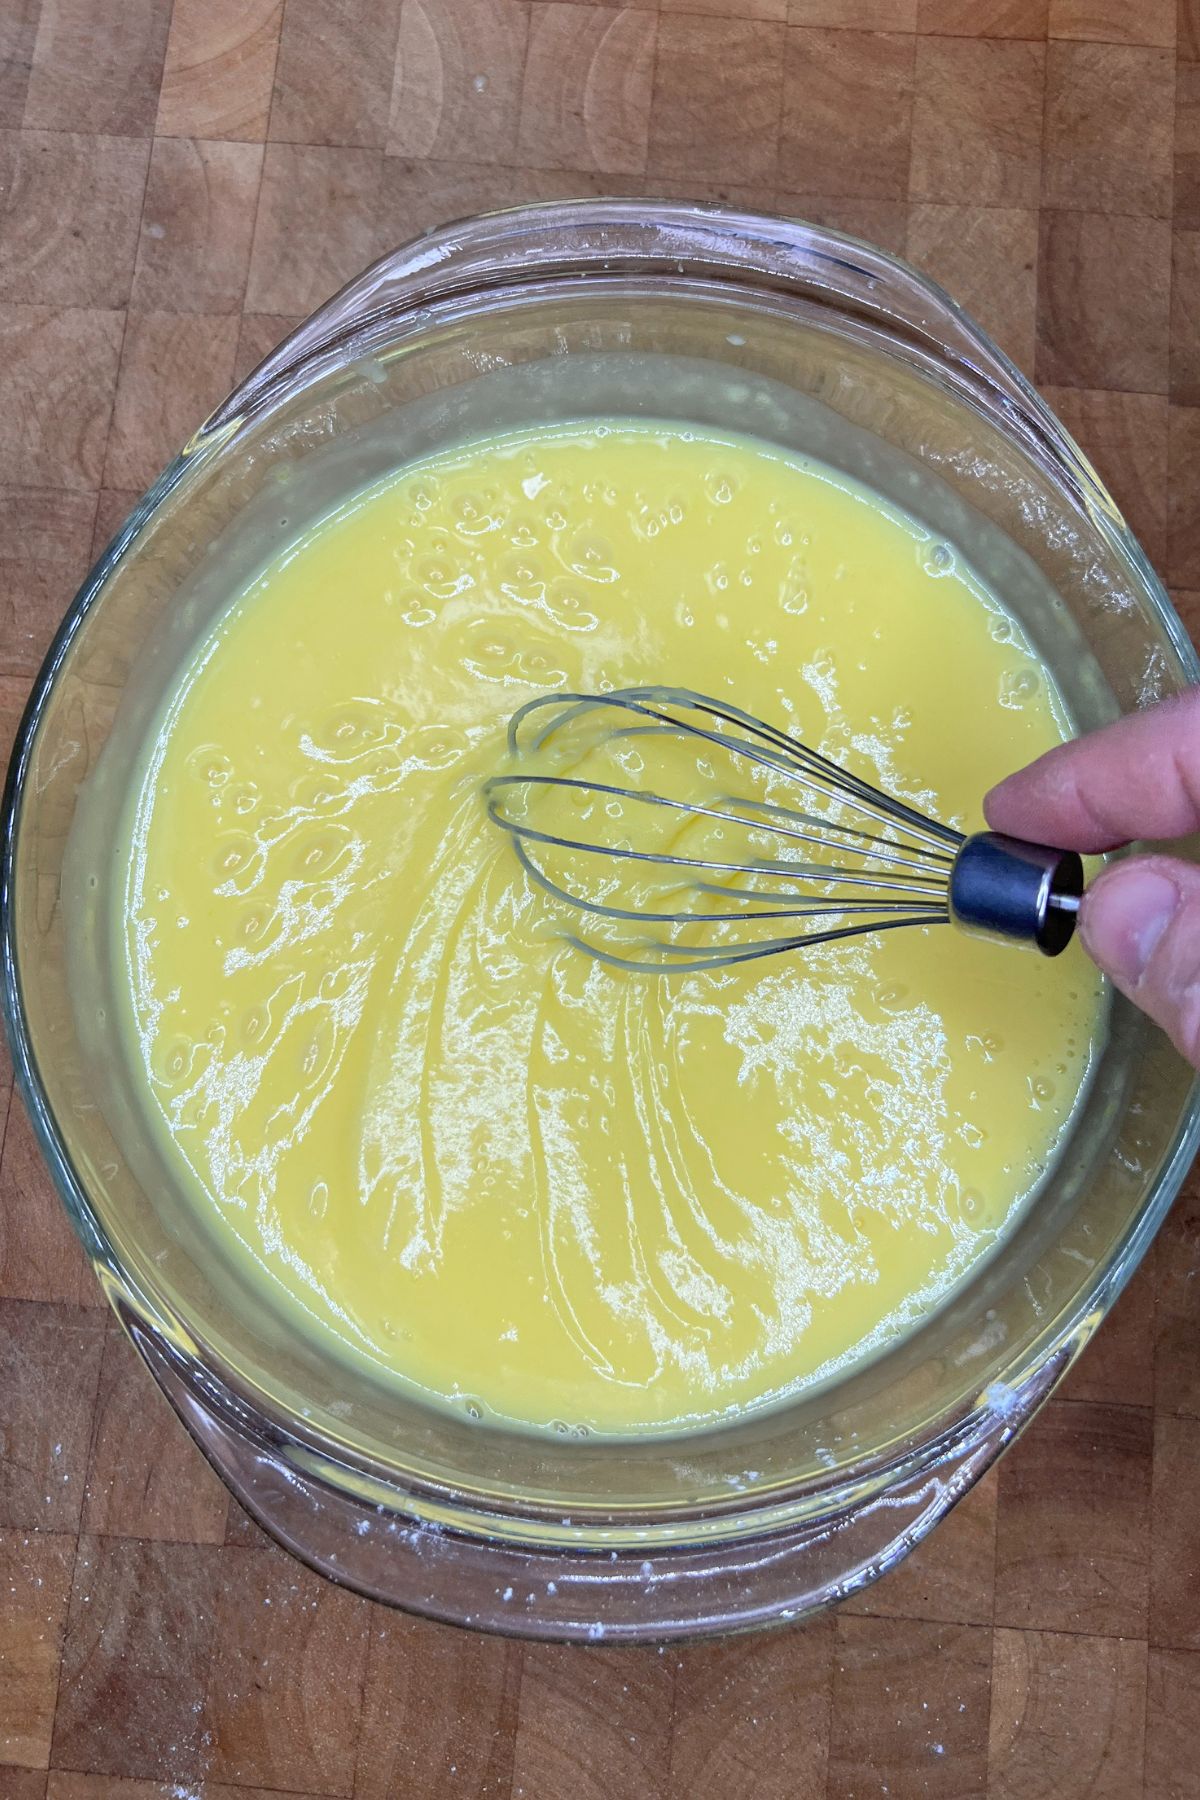 Stirring up lemon pudding.